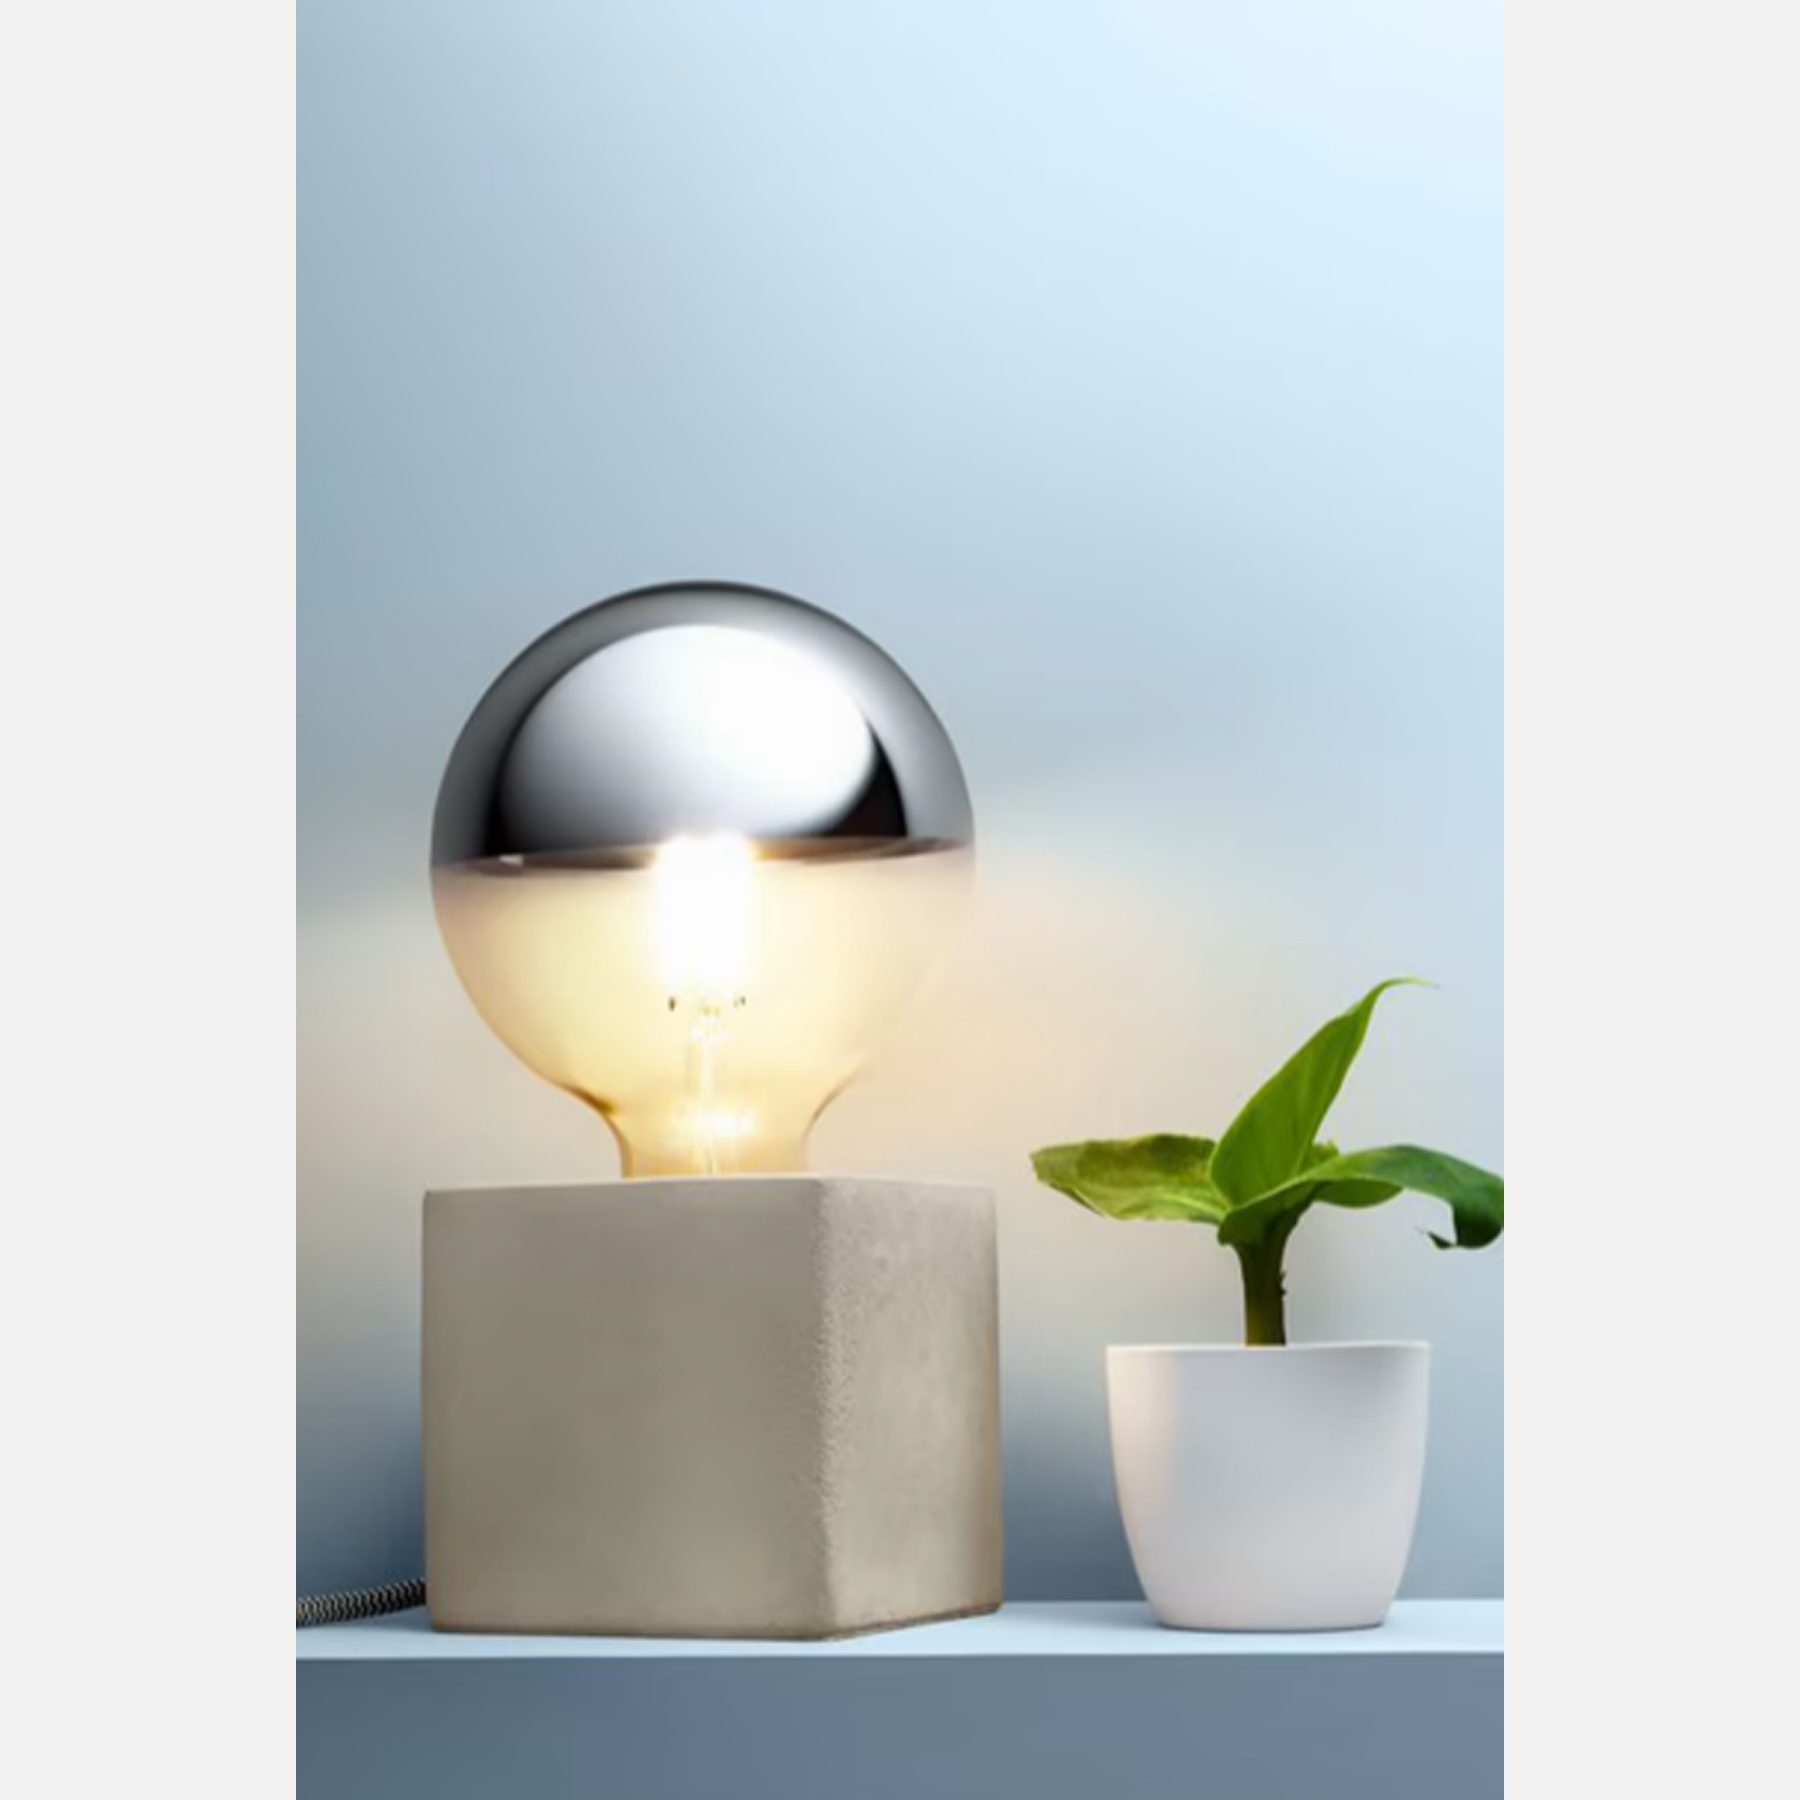 لامپ LED نیمه آینه با پایه بتنی Tchibo LED Half Mirror Lamp With Concrete Base